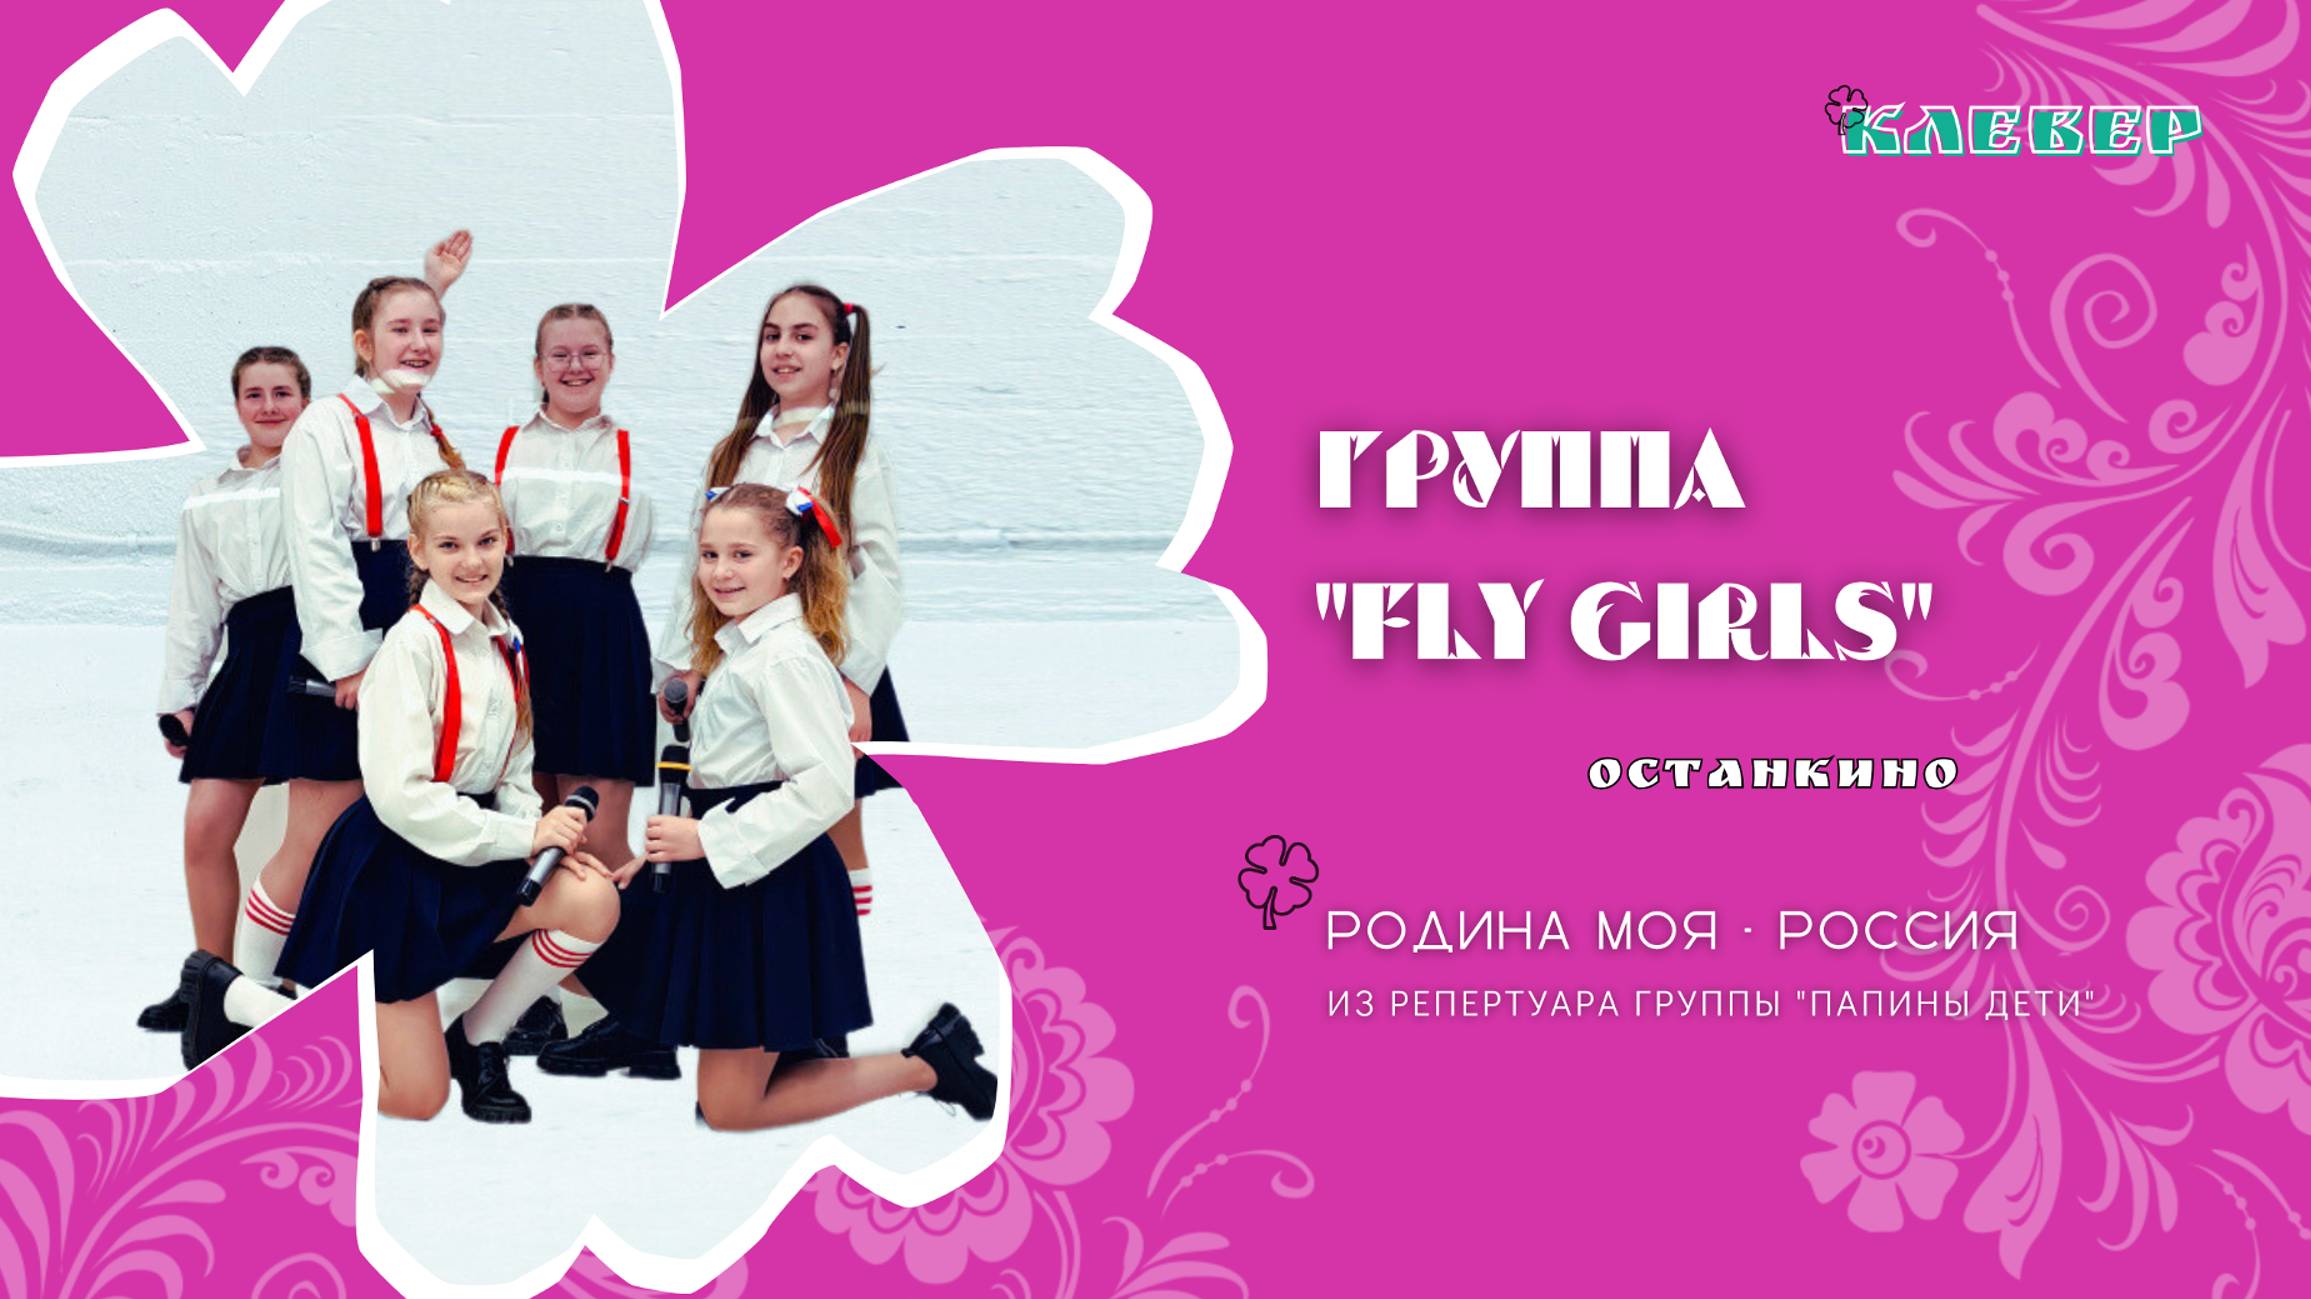 КЛЕВЕР / Группа "Fly girls" (Останкино) - Родина моя - Россия